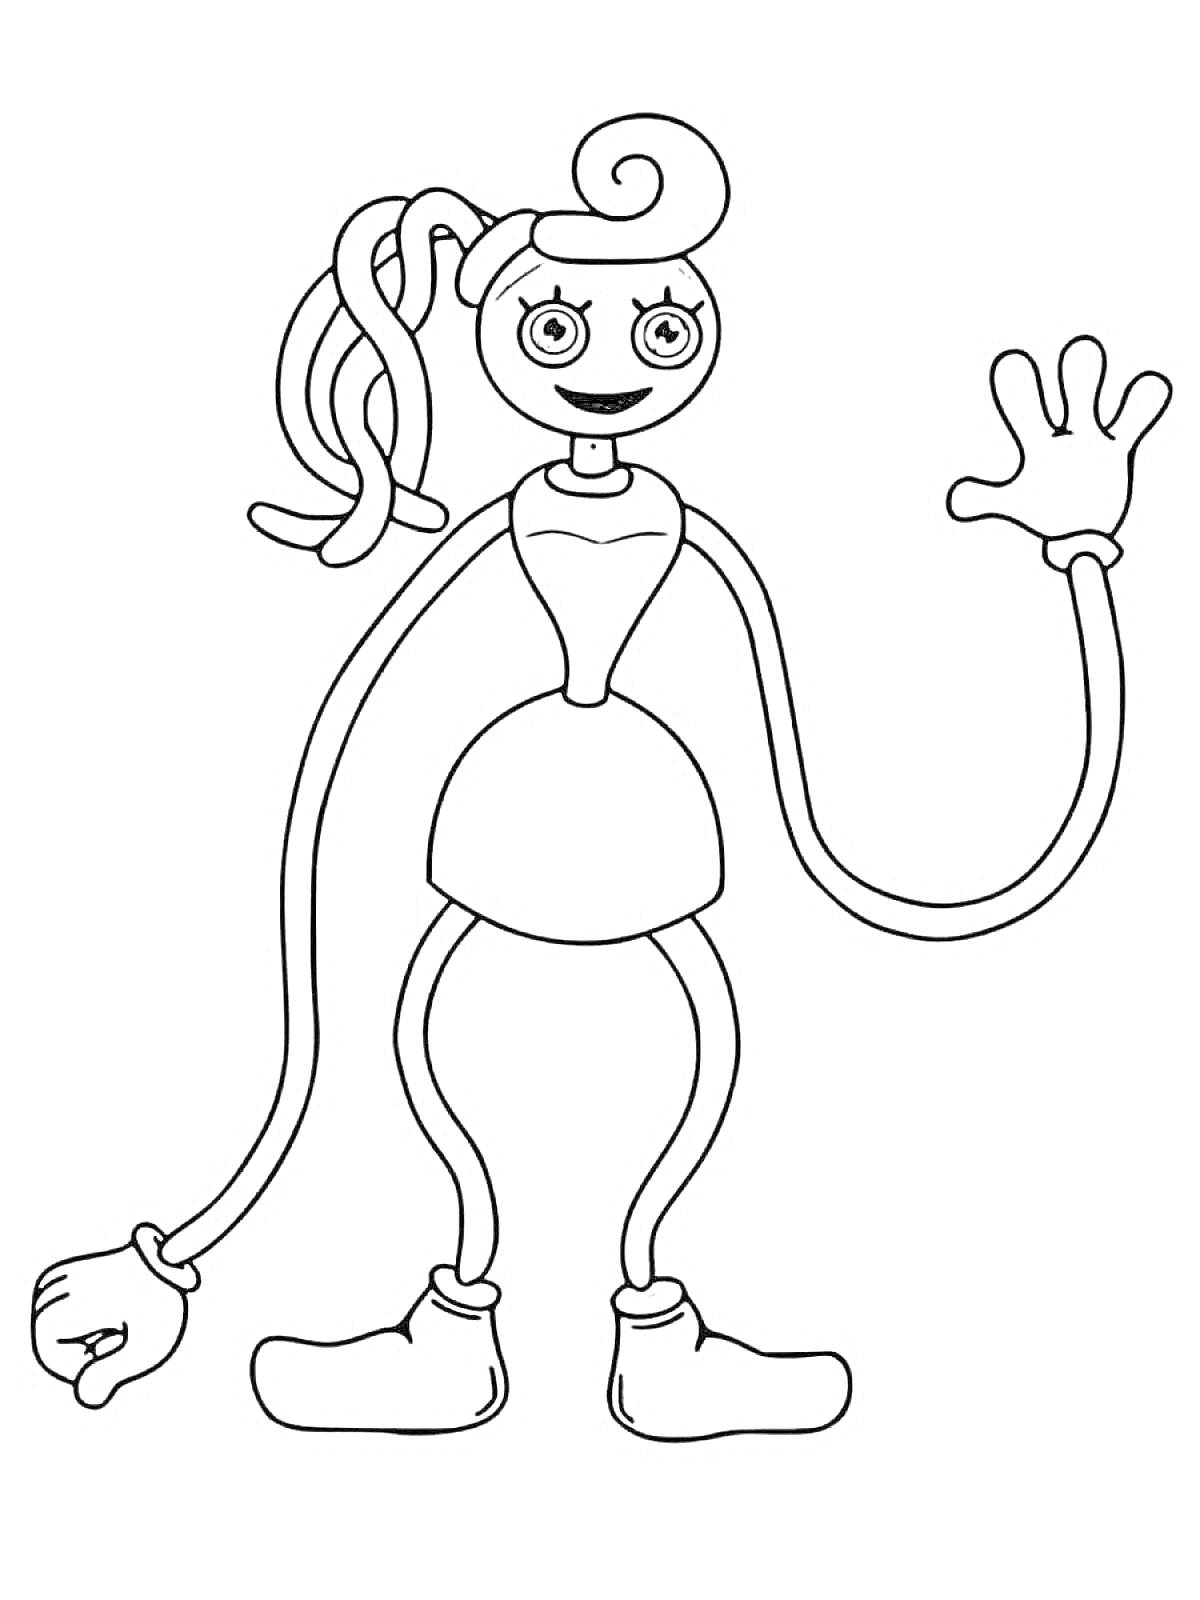 Раскраска Жуткая игрушка с длинными руками и ногами, кудряшки, большие глаза, улыбка, перчатки и ботинки